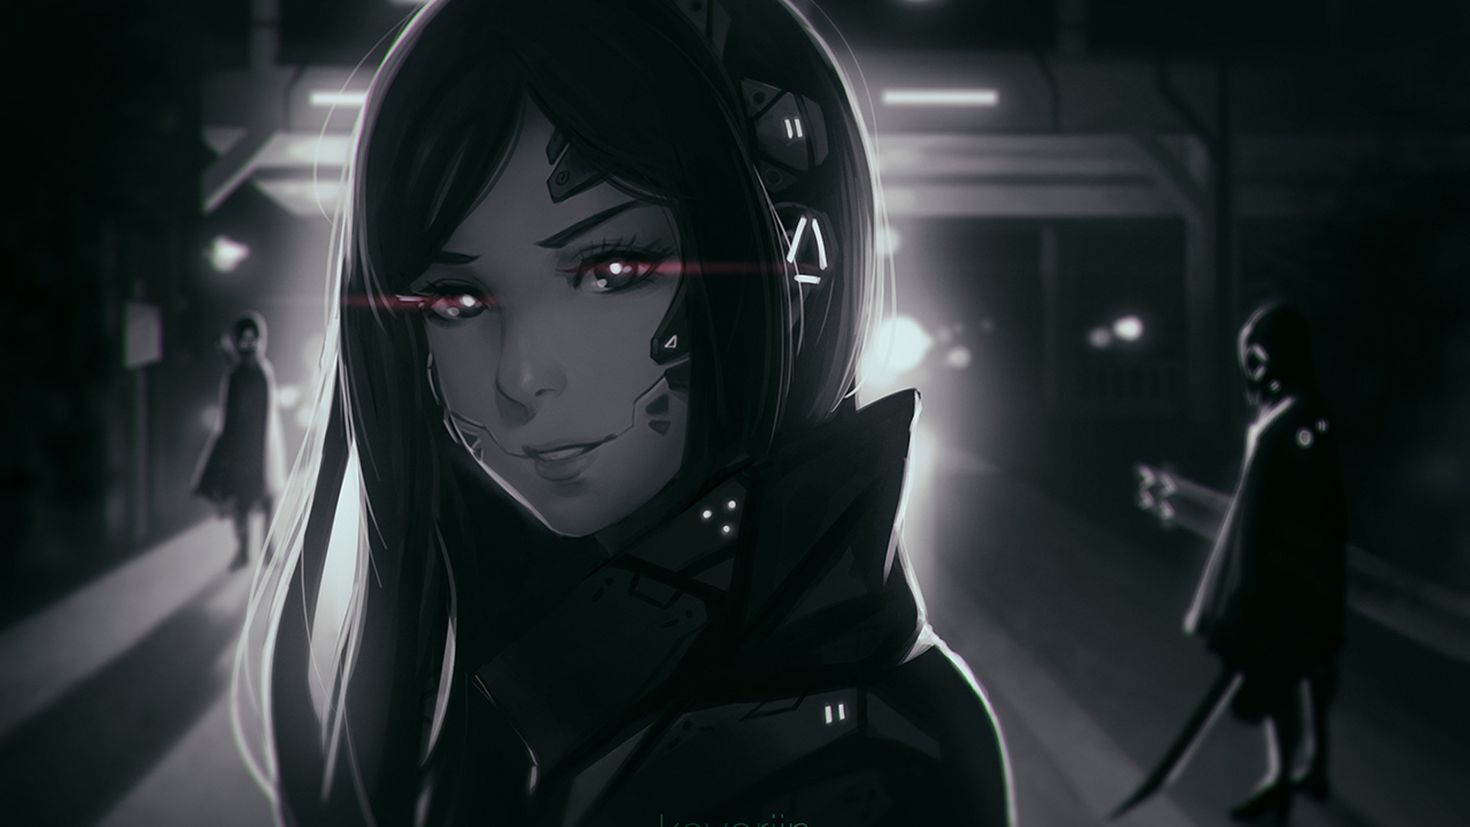 Cyberpunk girl anime art фото 84